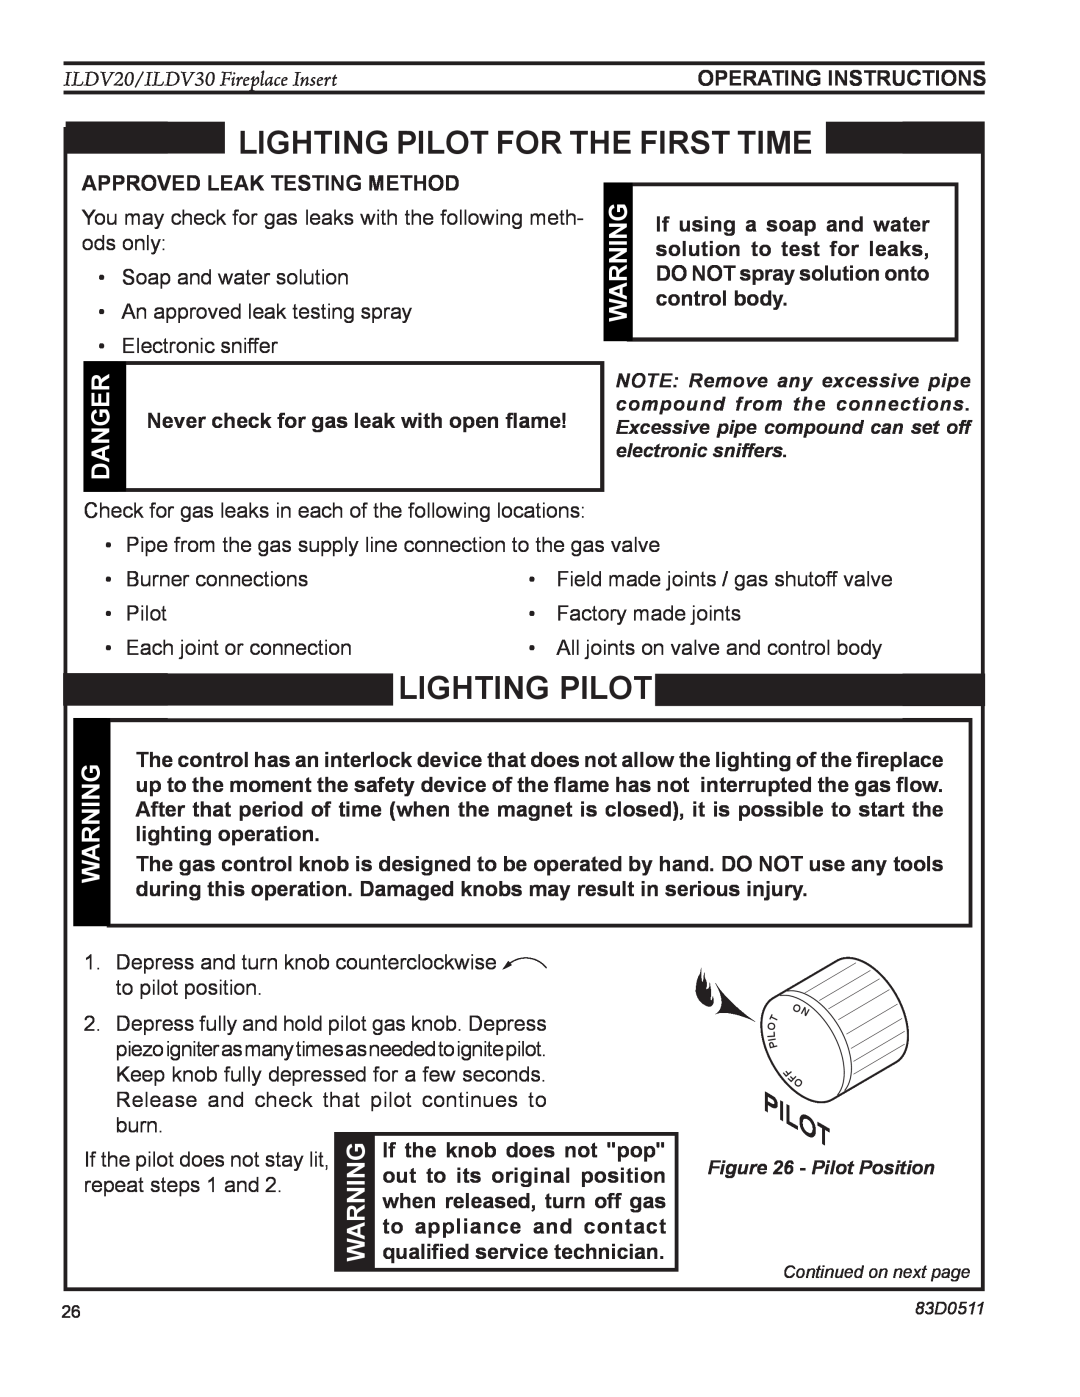 Monessen Hearth ILDV20PV manual Lighting pilot, danger, Pilot, approved leak testing method, If the pilot does not stay lit 